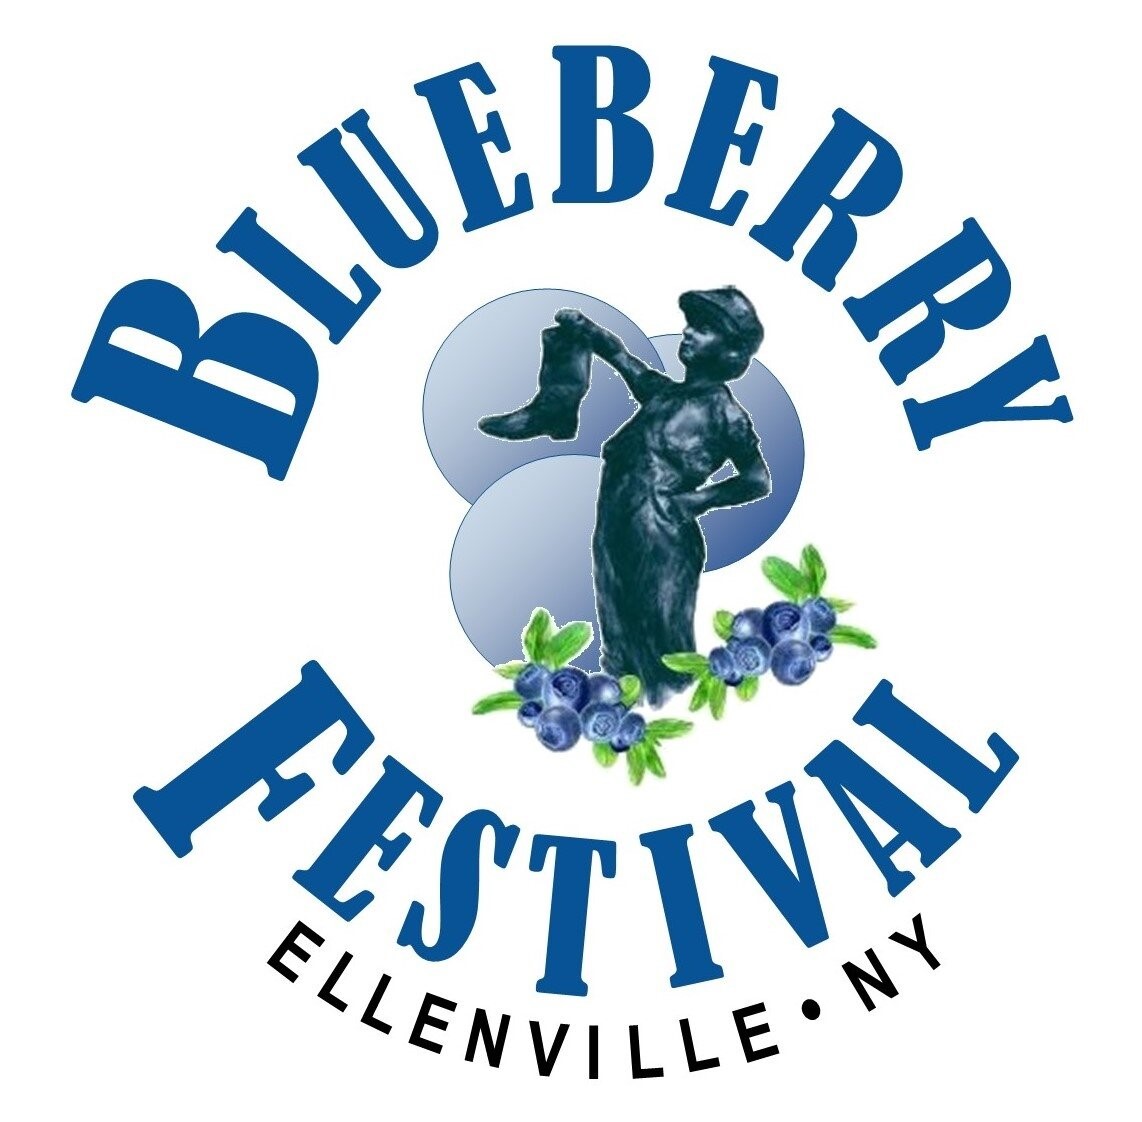 Blueberry Festival